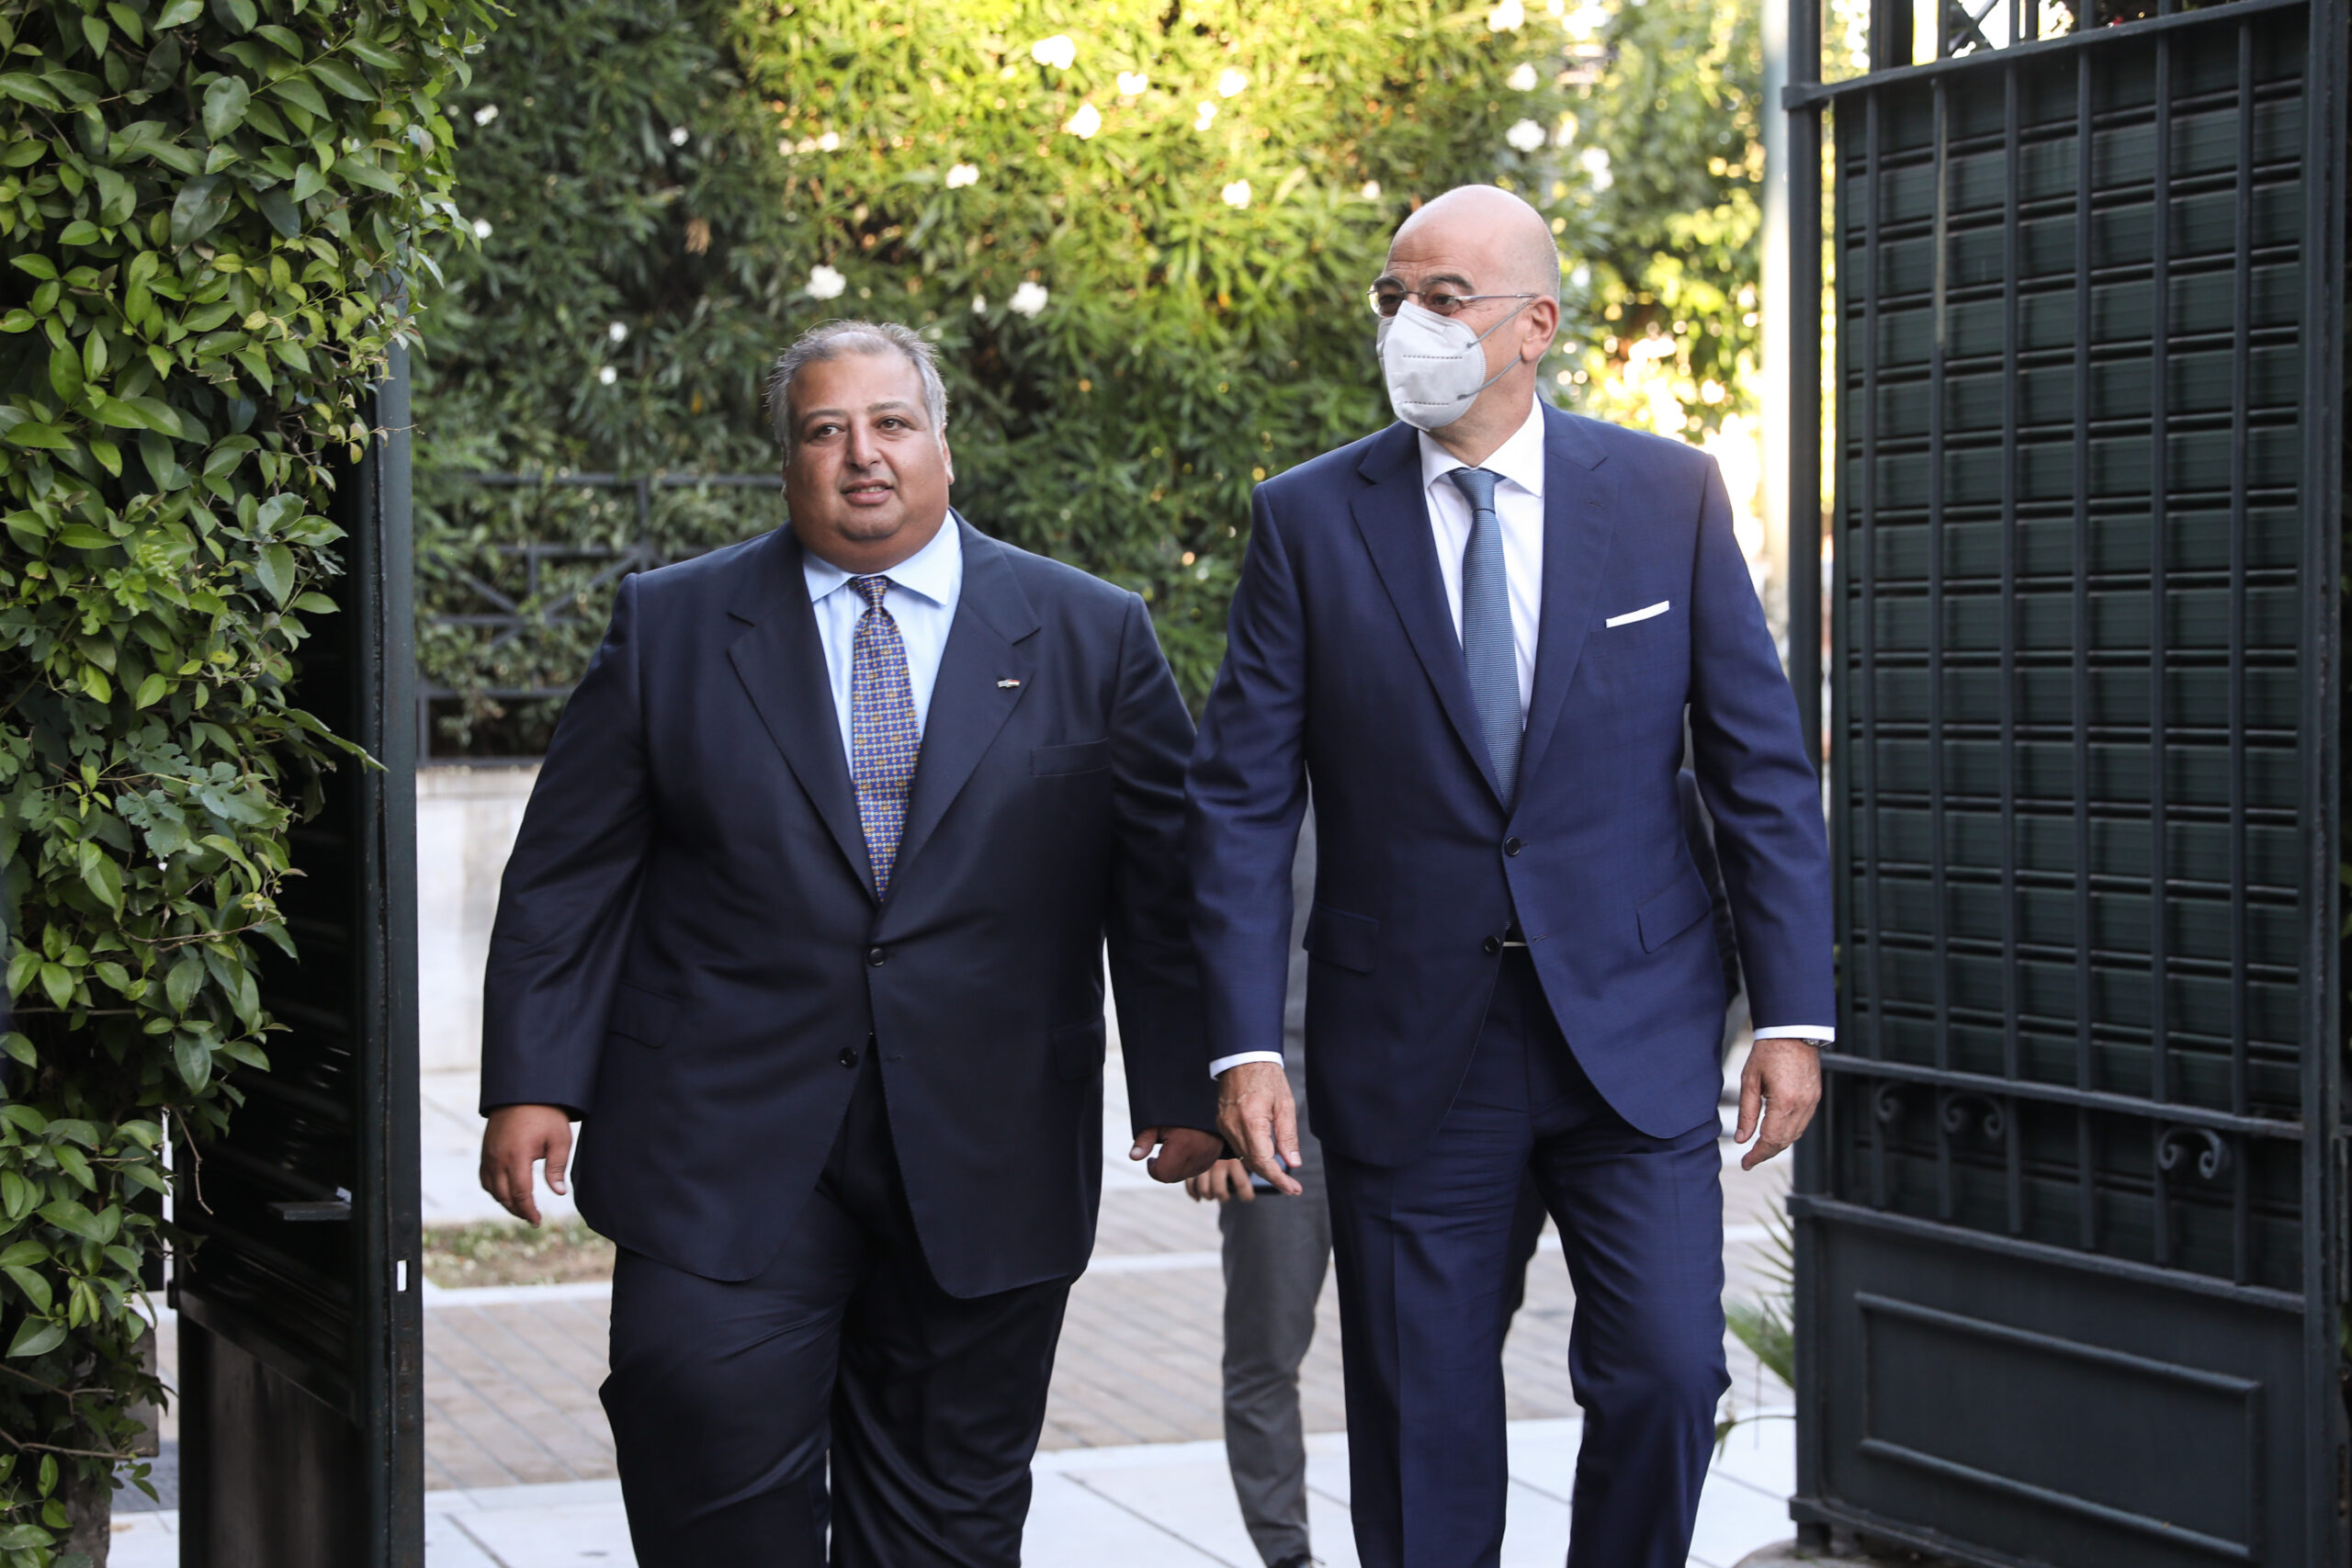 Ο Υπουργός Εξωτερικών Νίκος Δένδιας παρευρέθηκε σε εκδήλωση για την Εθνική γιορτή της Αιγύπτου, στην πρεσβέια της Αιγύπτου, στην Αθήνα, Παρασκευή 15 Ιουλίου, 2022. Τον Υπουργό υποδέχτηκε ο Επιτετραμμένος της Αραβικής Δημοκρατίας της Αιγύπτου Άμγκαντ Α. Ρέζεκ (Amagd A. Rezk).